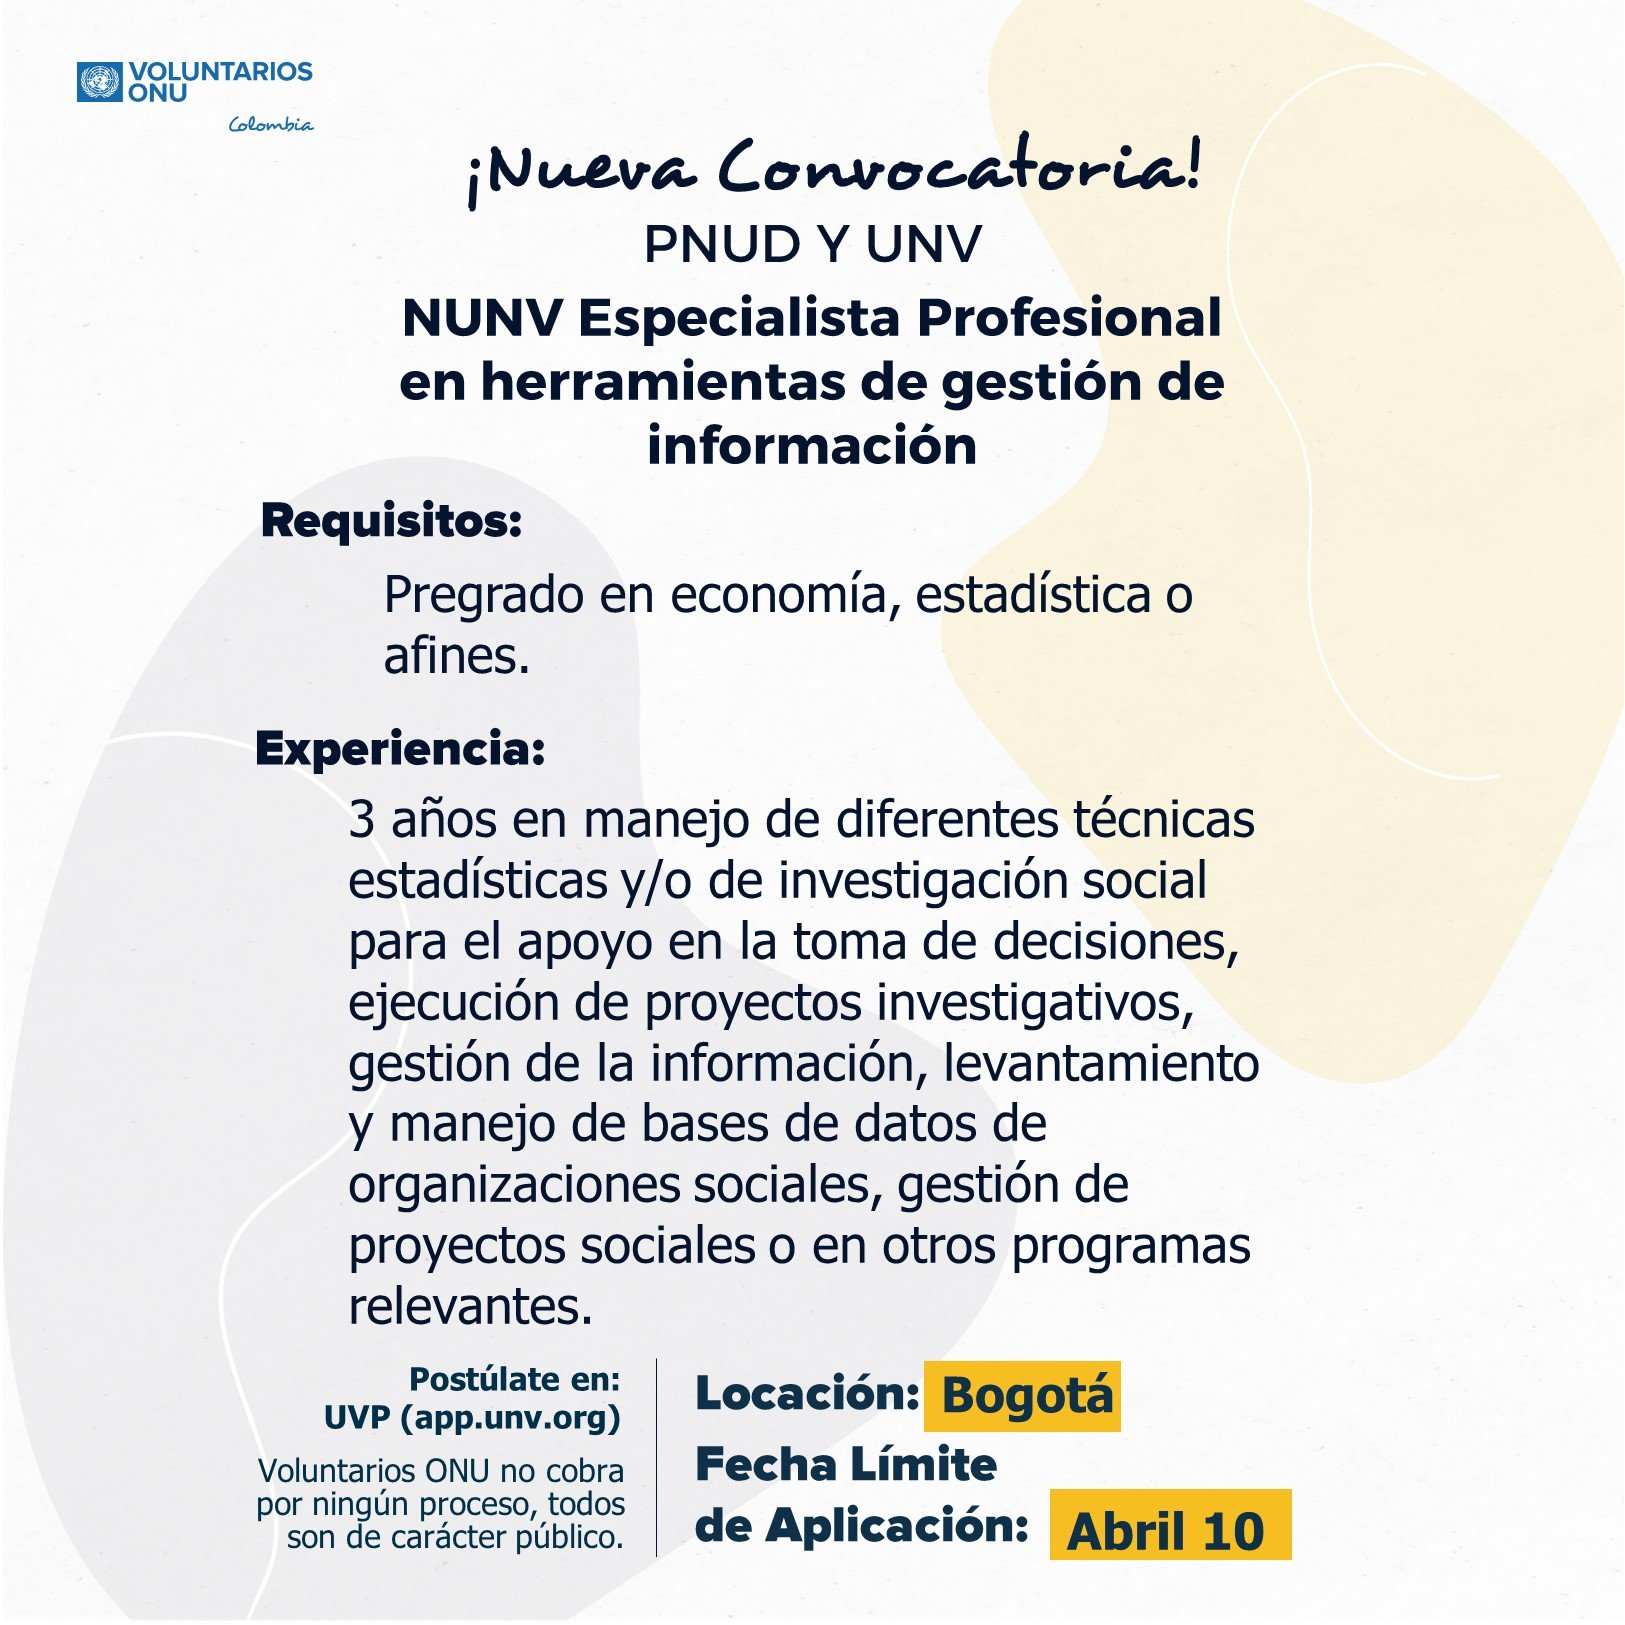 NUNV Especialista profesional en herramientas de gestión de información PNUD